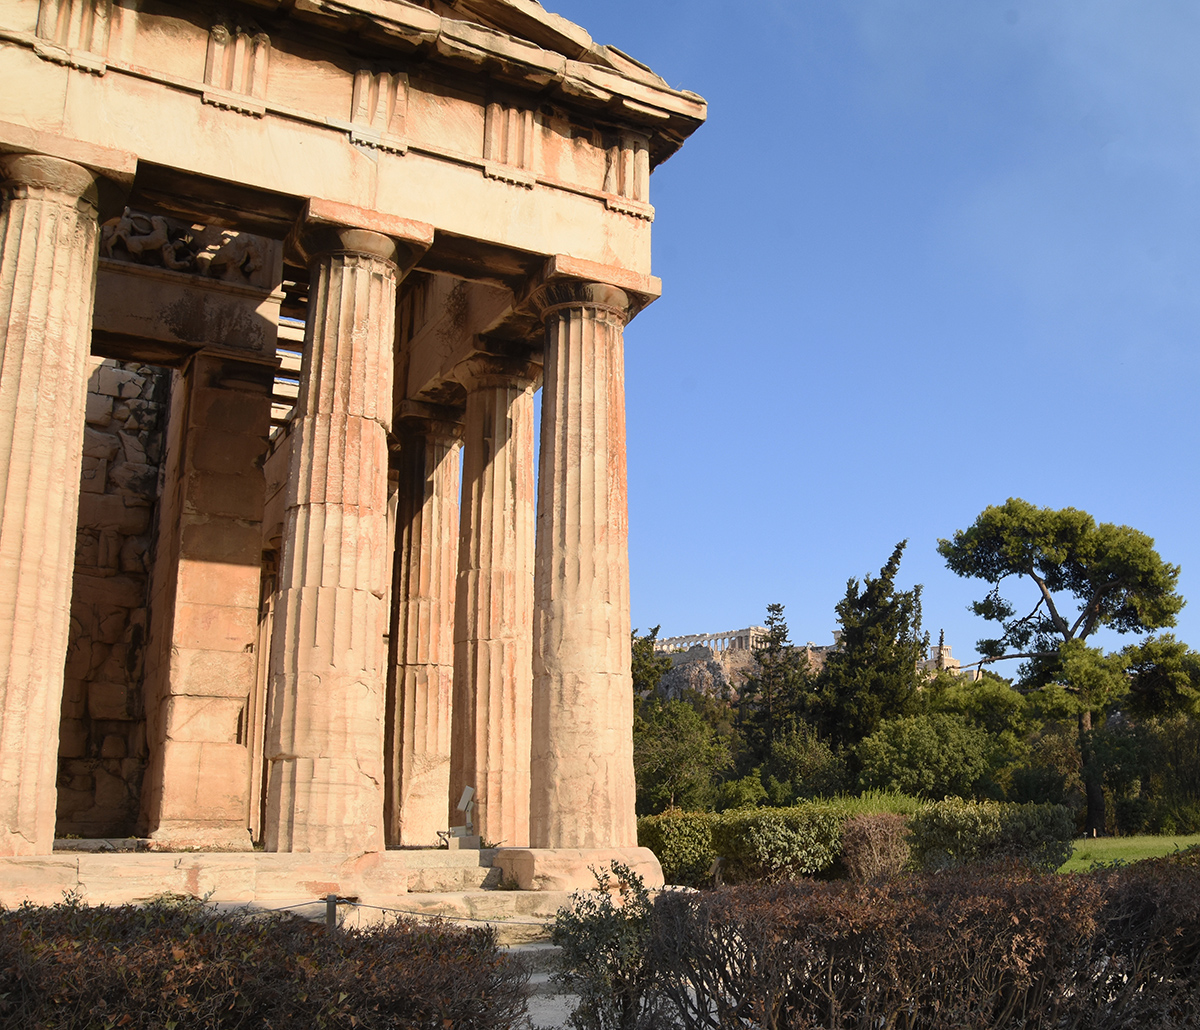 Temple of Hephaestus and the Acropolis by Marilyn Peake